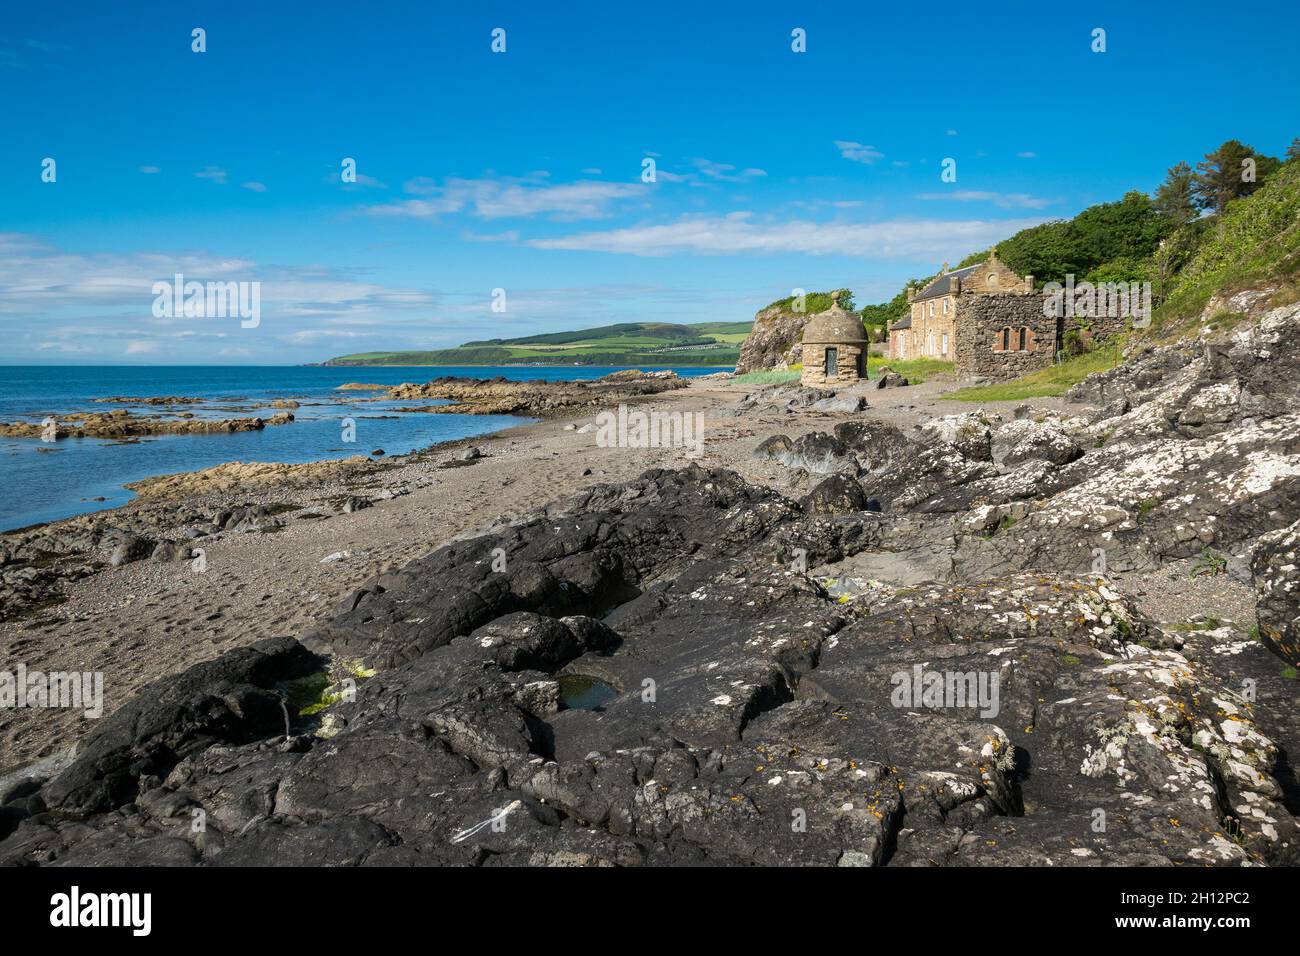 Rocky beach near the Culzean Castle, South Ayrshire, on the west coast of Scotland. Stock Photo